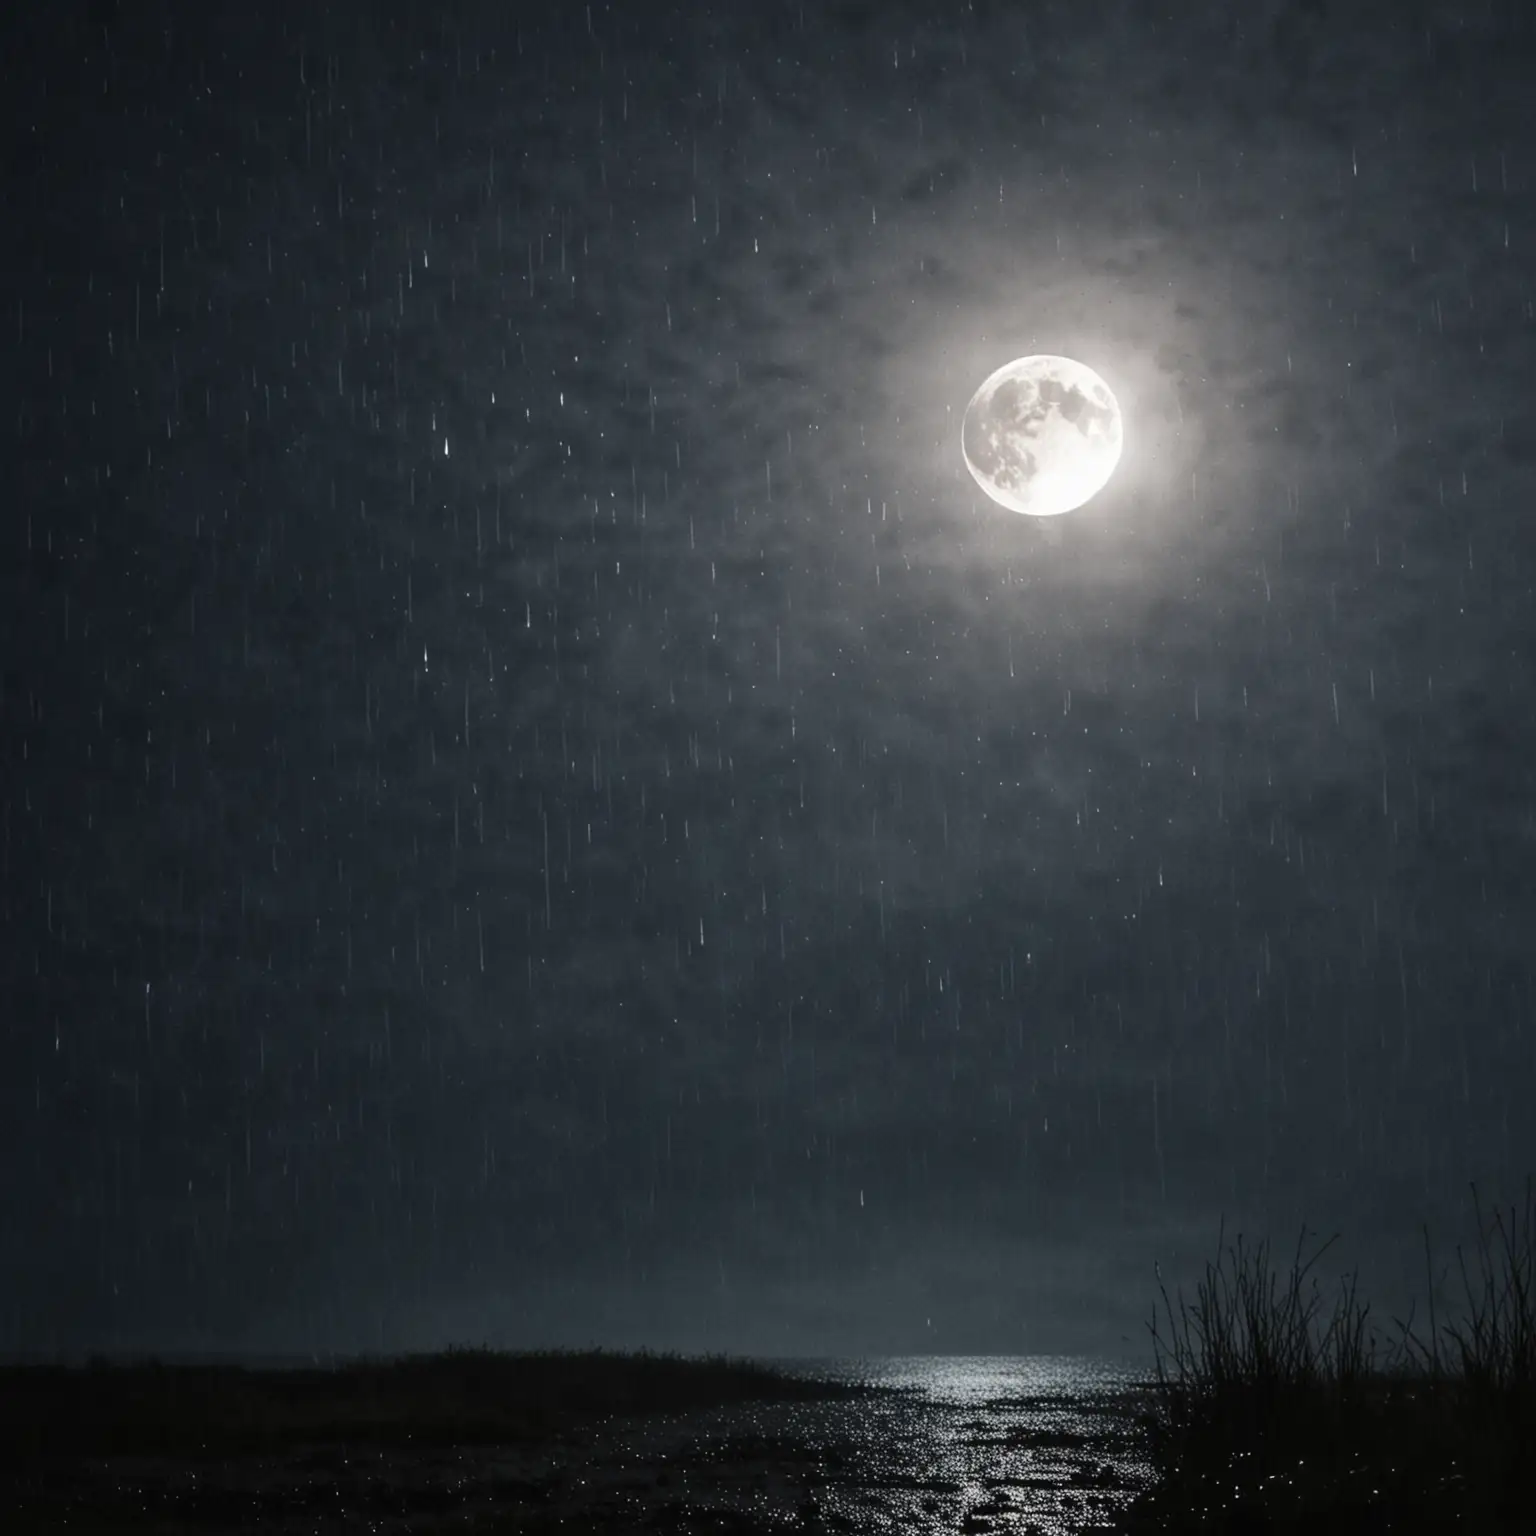 rain at night with moon behind
